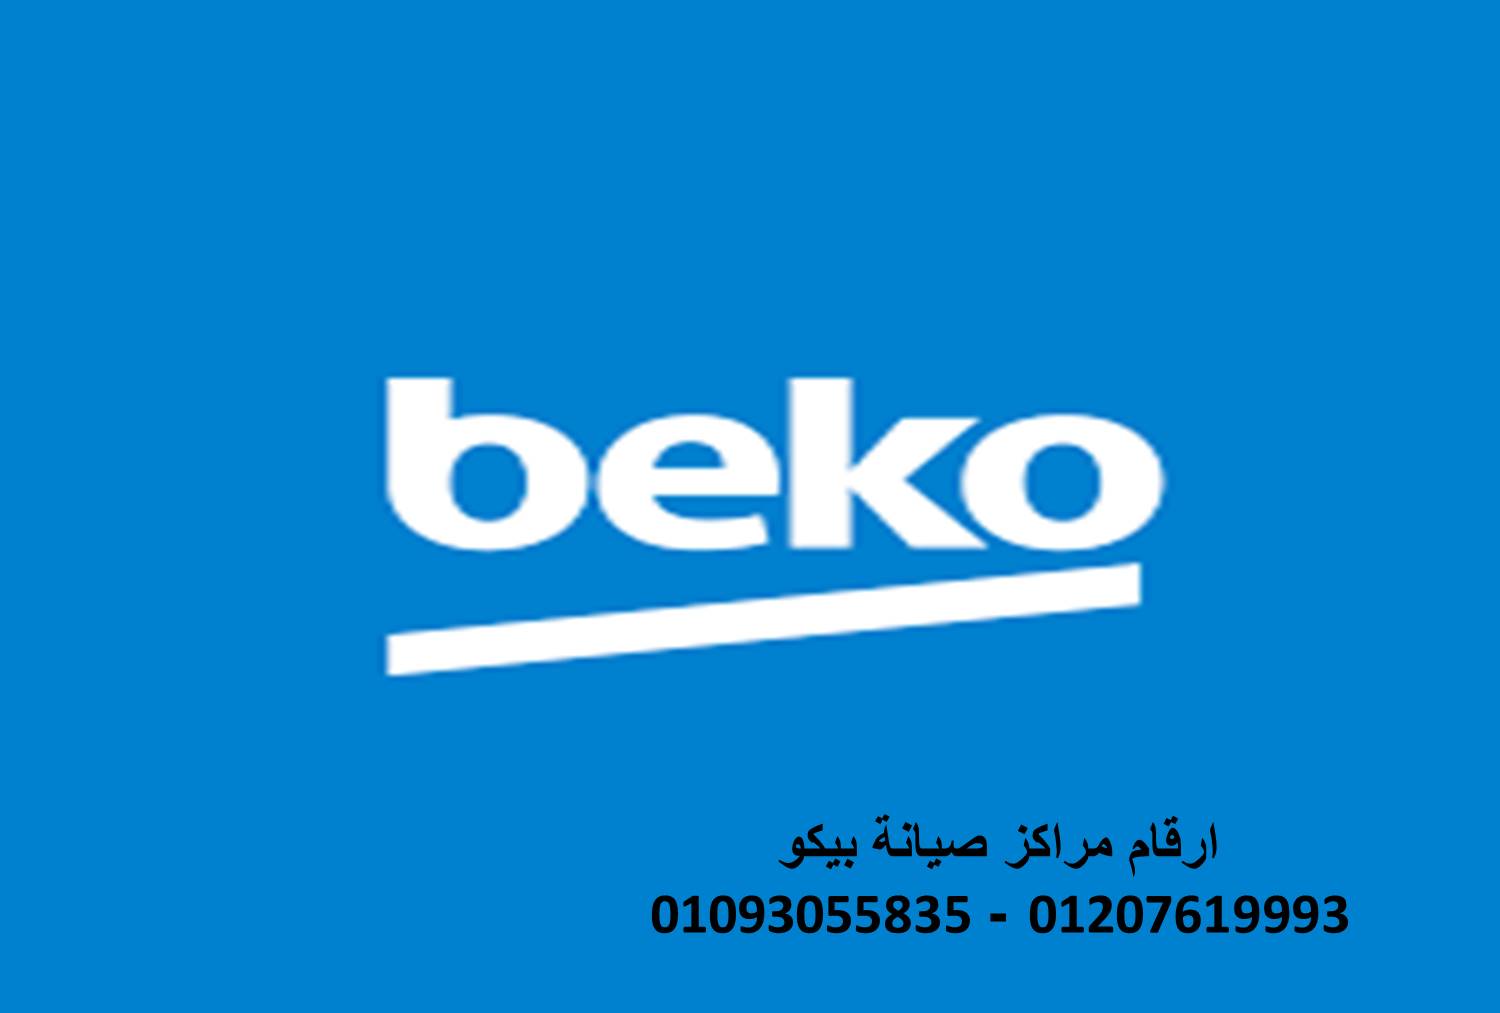 رقم صيانة بيكو حلوان  01010916814